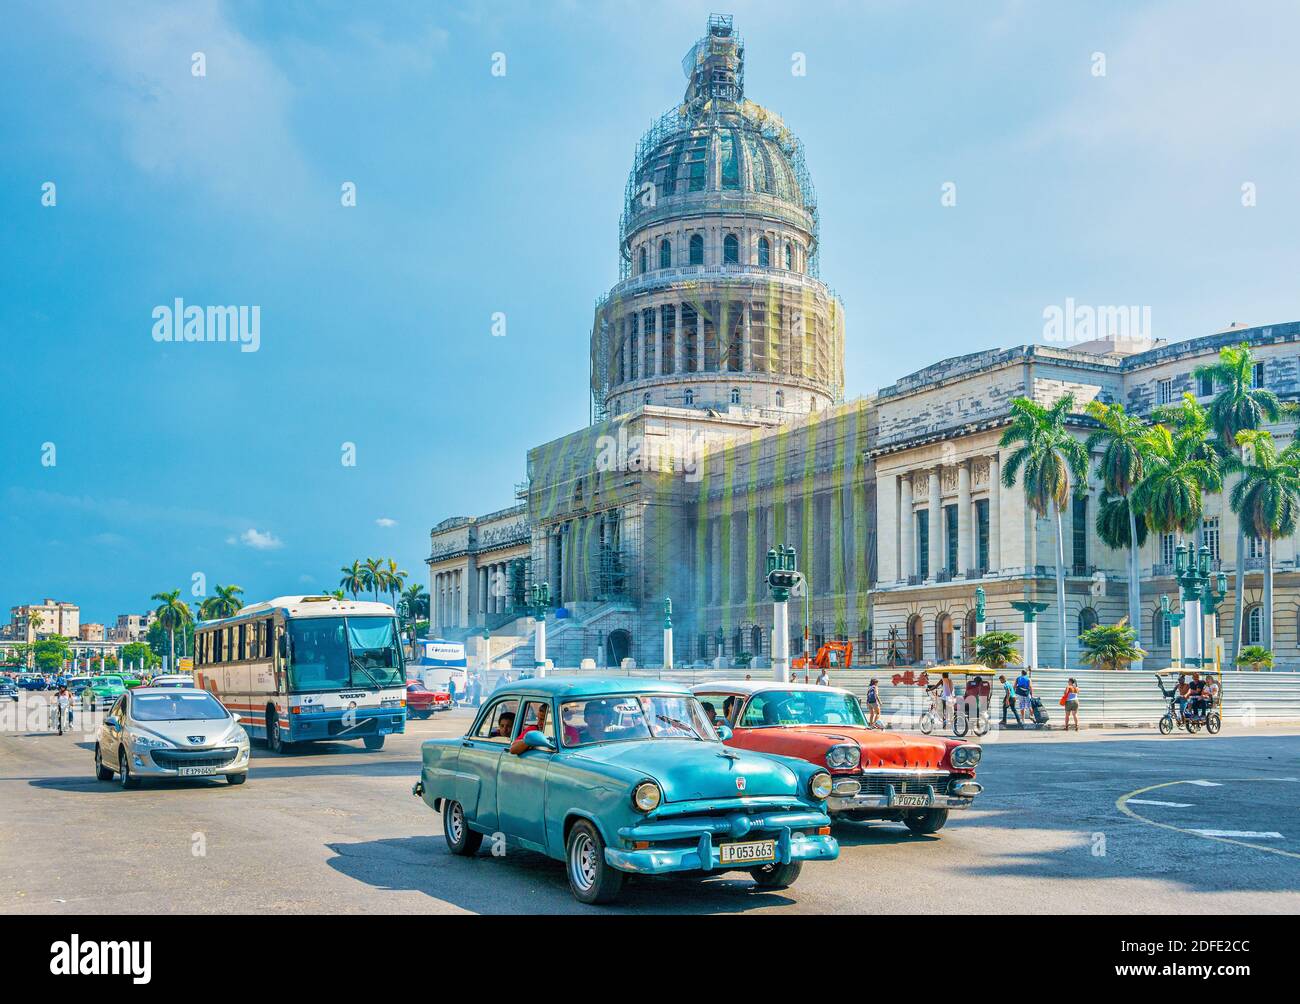 Bâtiment Capitolio à la Havane, Cuba Banque D'Images